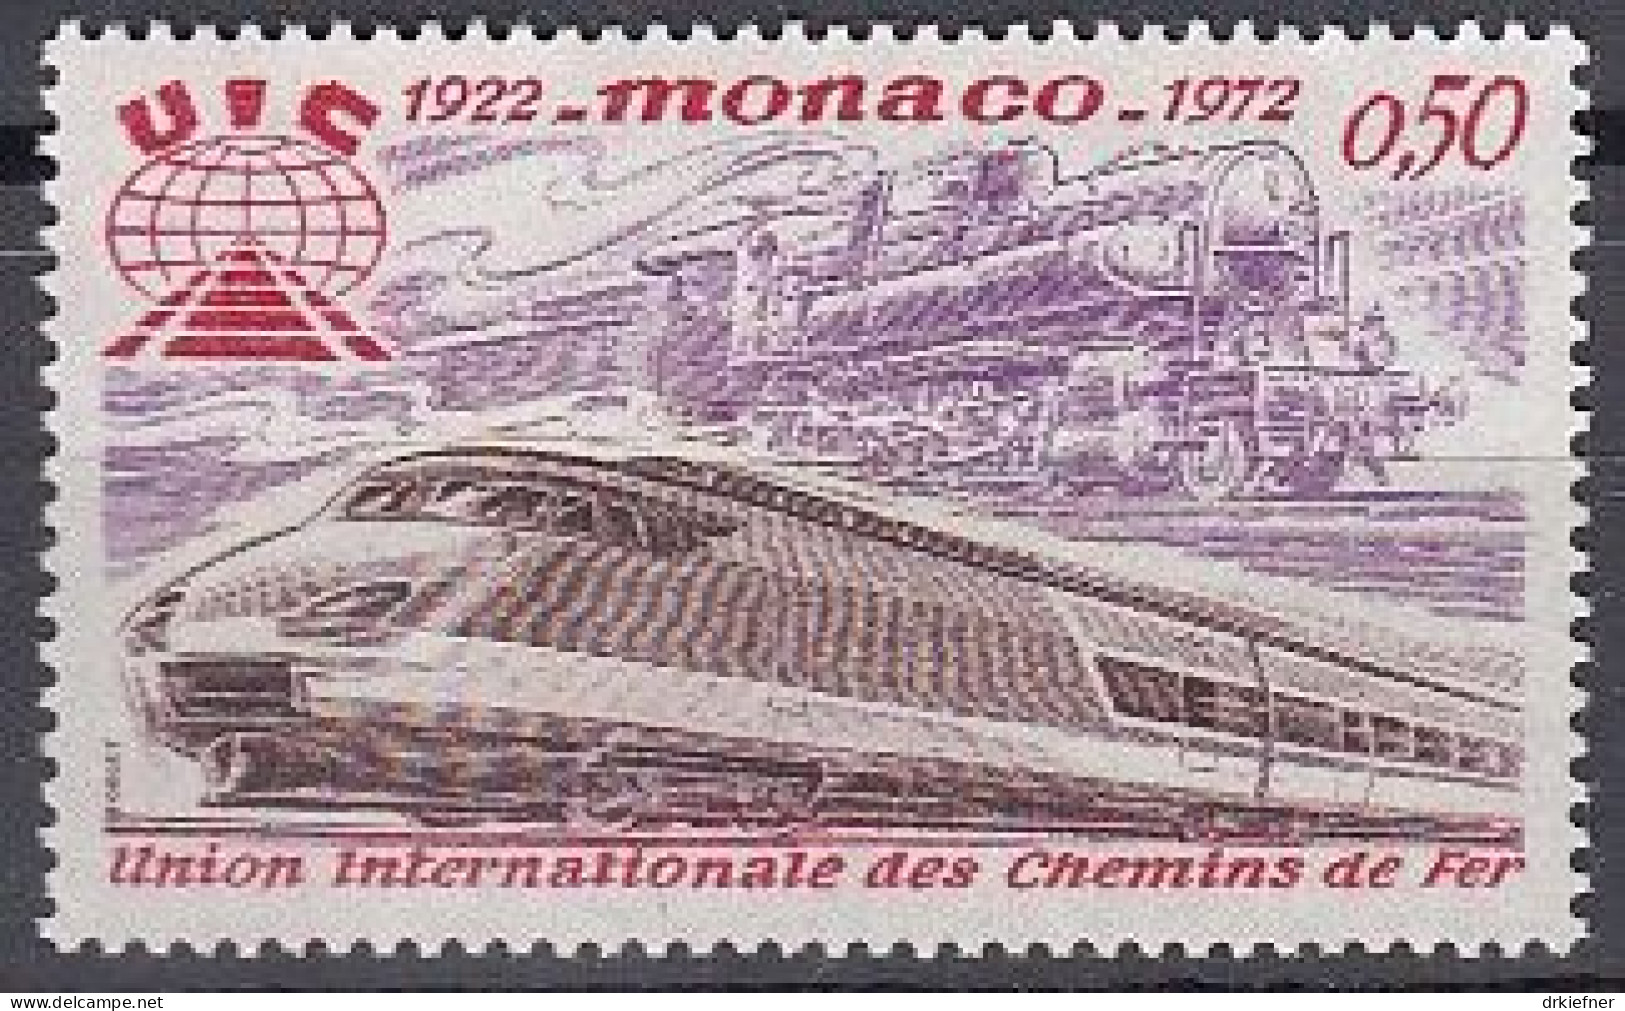 MONACO  1034, Postfrisch **, Eisenbahn-Verband, Dampflok, TGV, 1972 - Nuevos